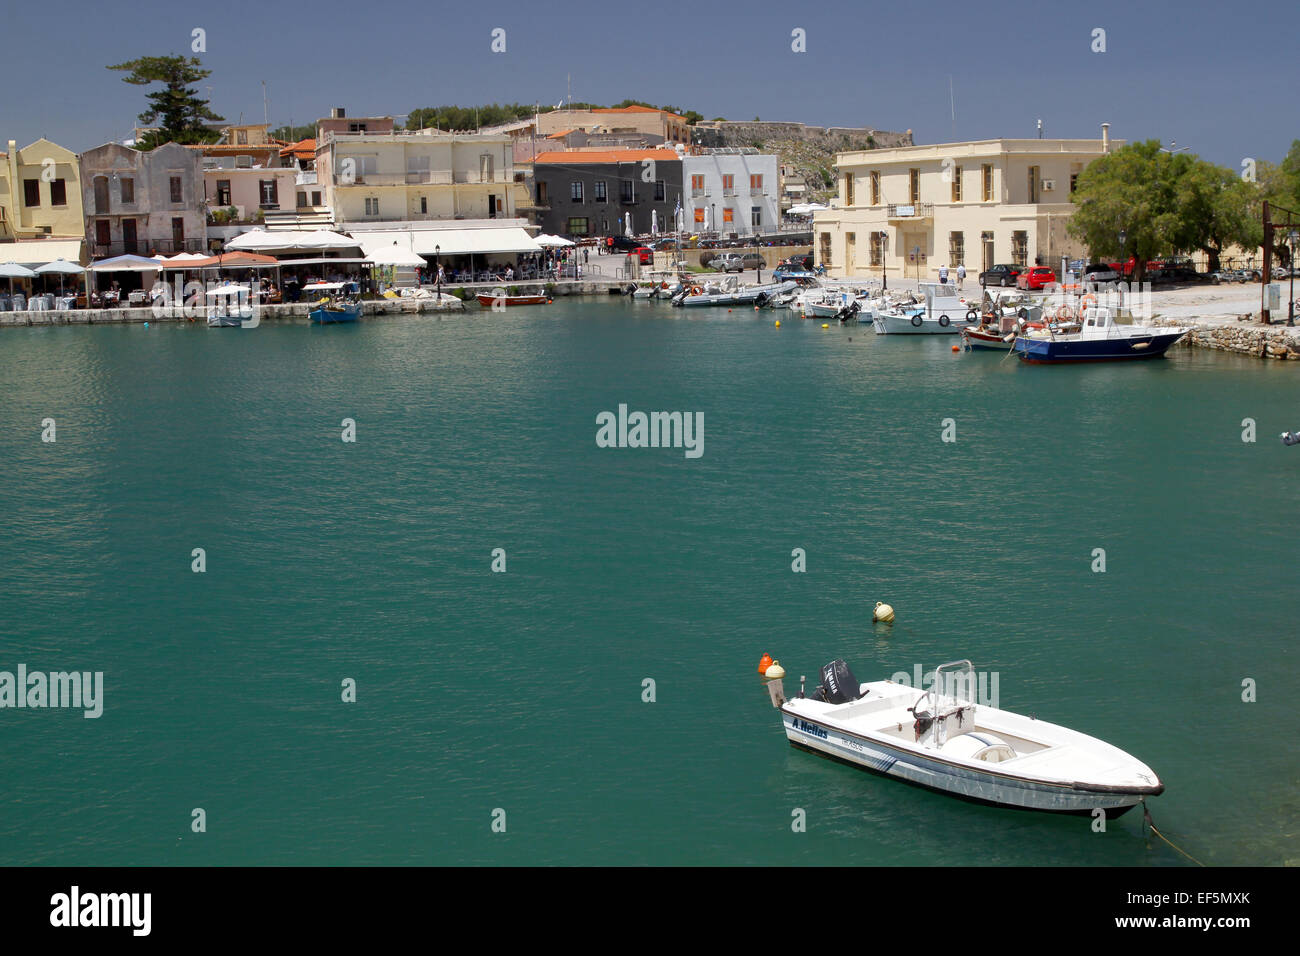 Bateau de vitesse et les bâtiments du port de Rethymnon Crète Grèce 02 Mai 2014 Banque D'Images